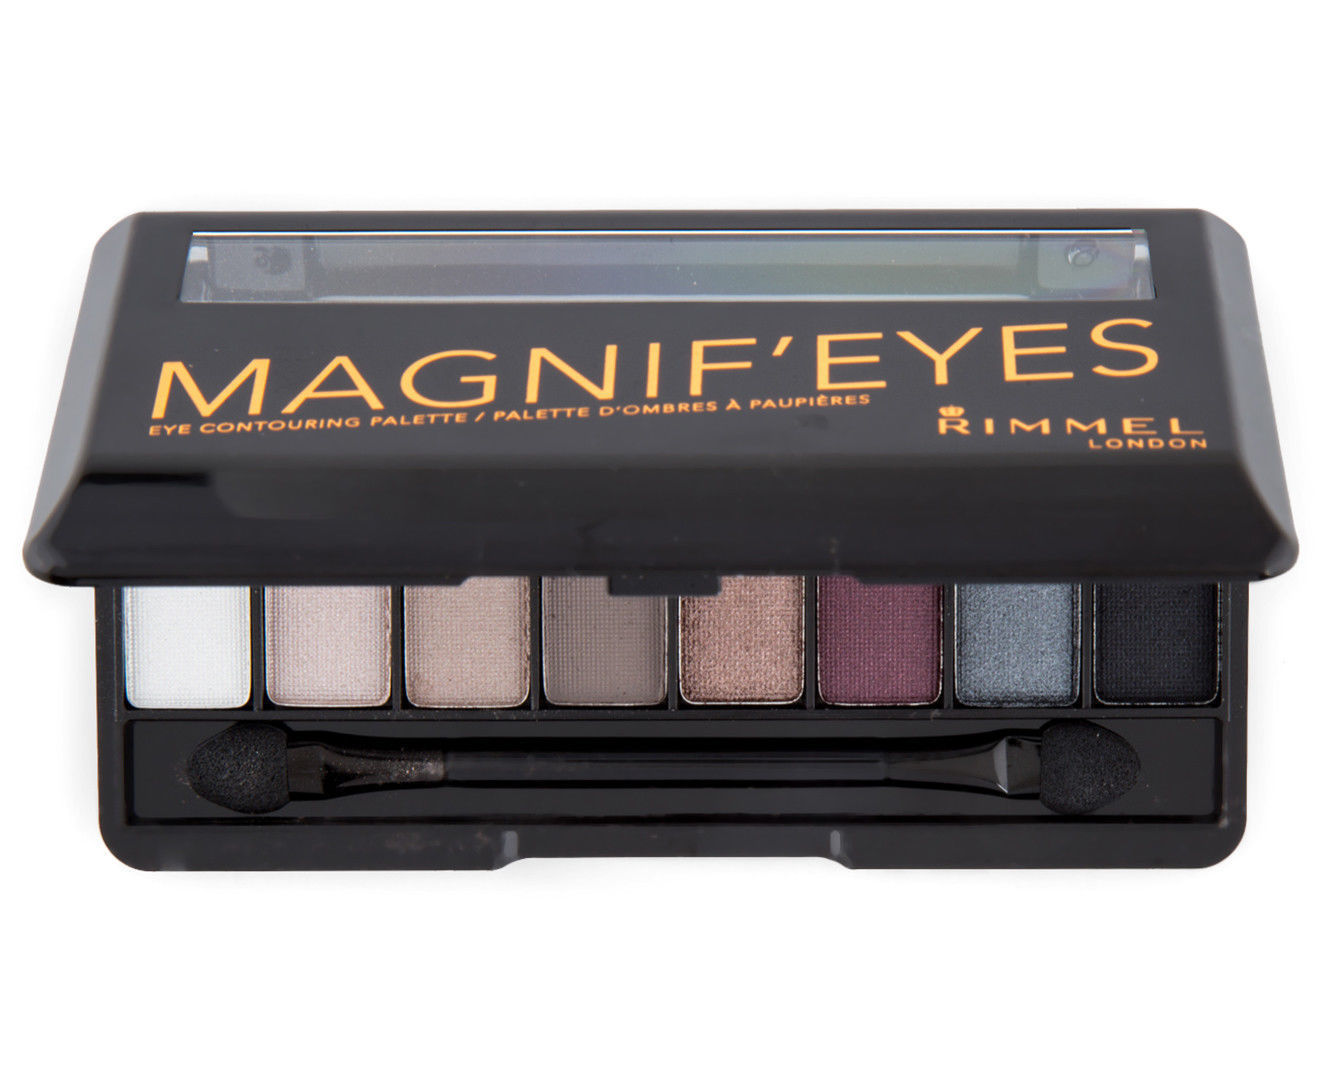 Magnif'eyes Eye Contouring Palette - 003 Grunge Glamour